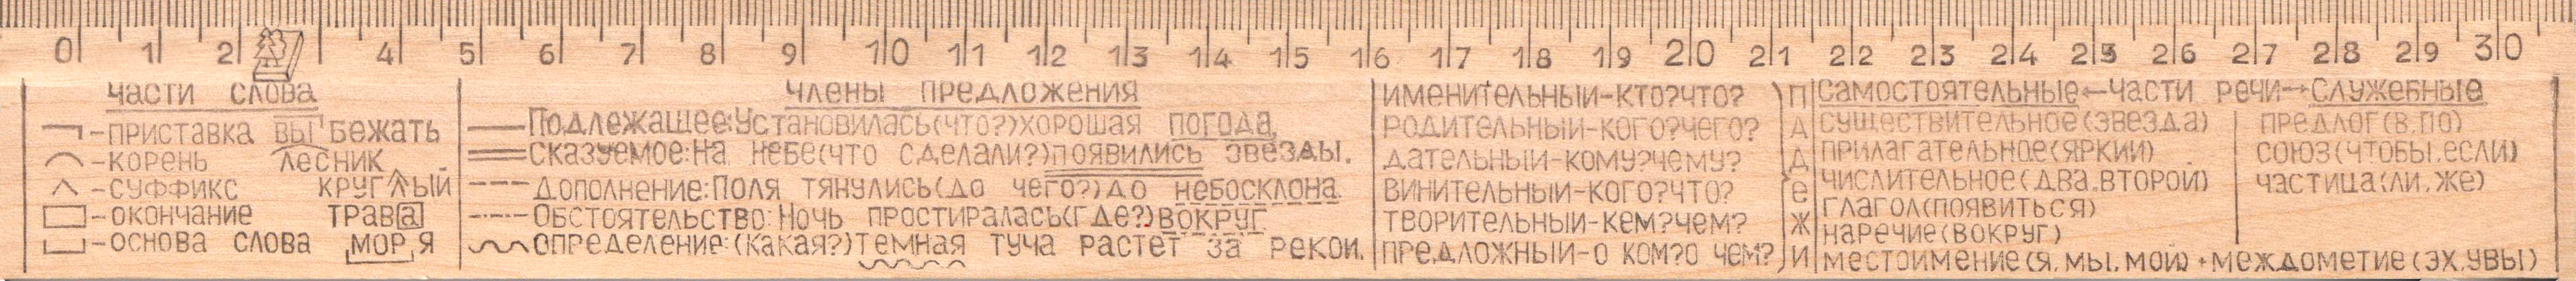 Линейка справочная деревянная (русский язык) С521